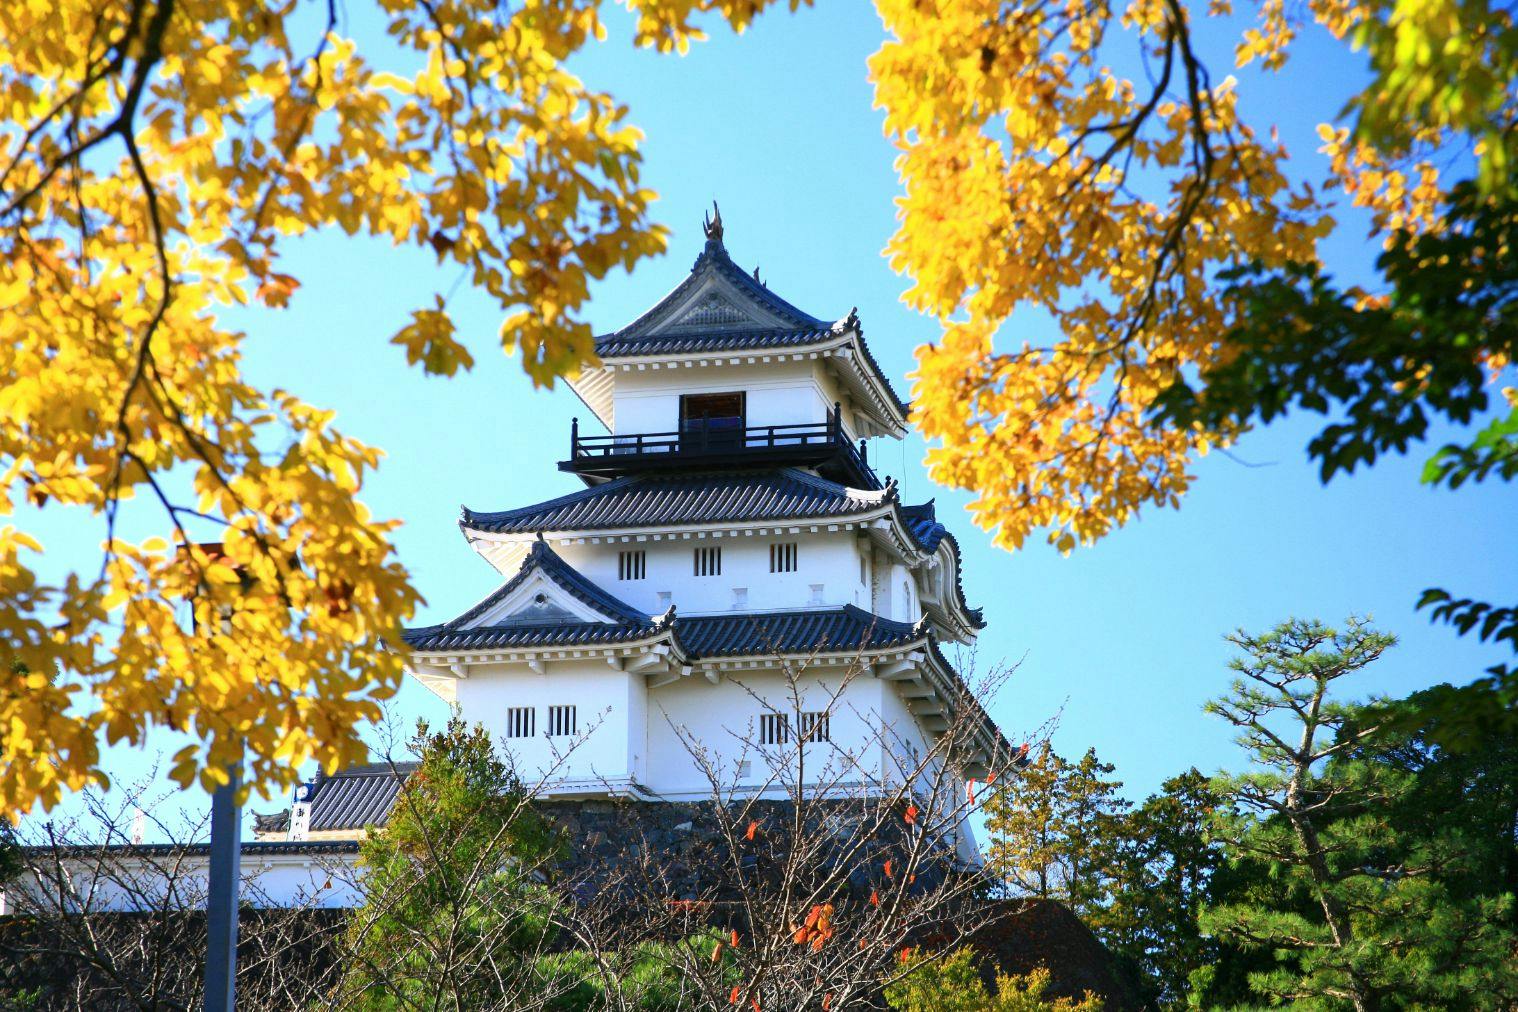 【入場チケット】掛川城/日本初の木造復元天守閣と四季折々の花が彩る歴史の旅